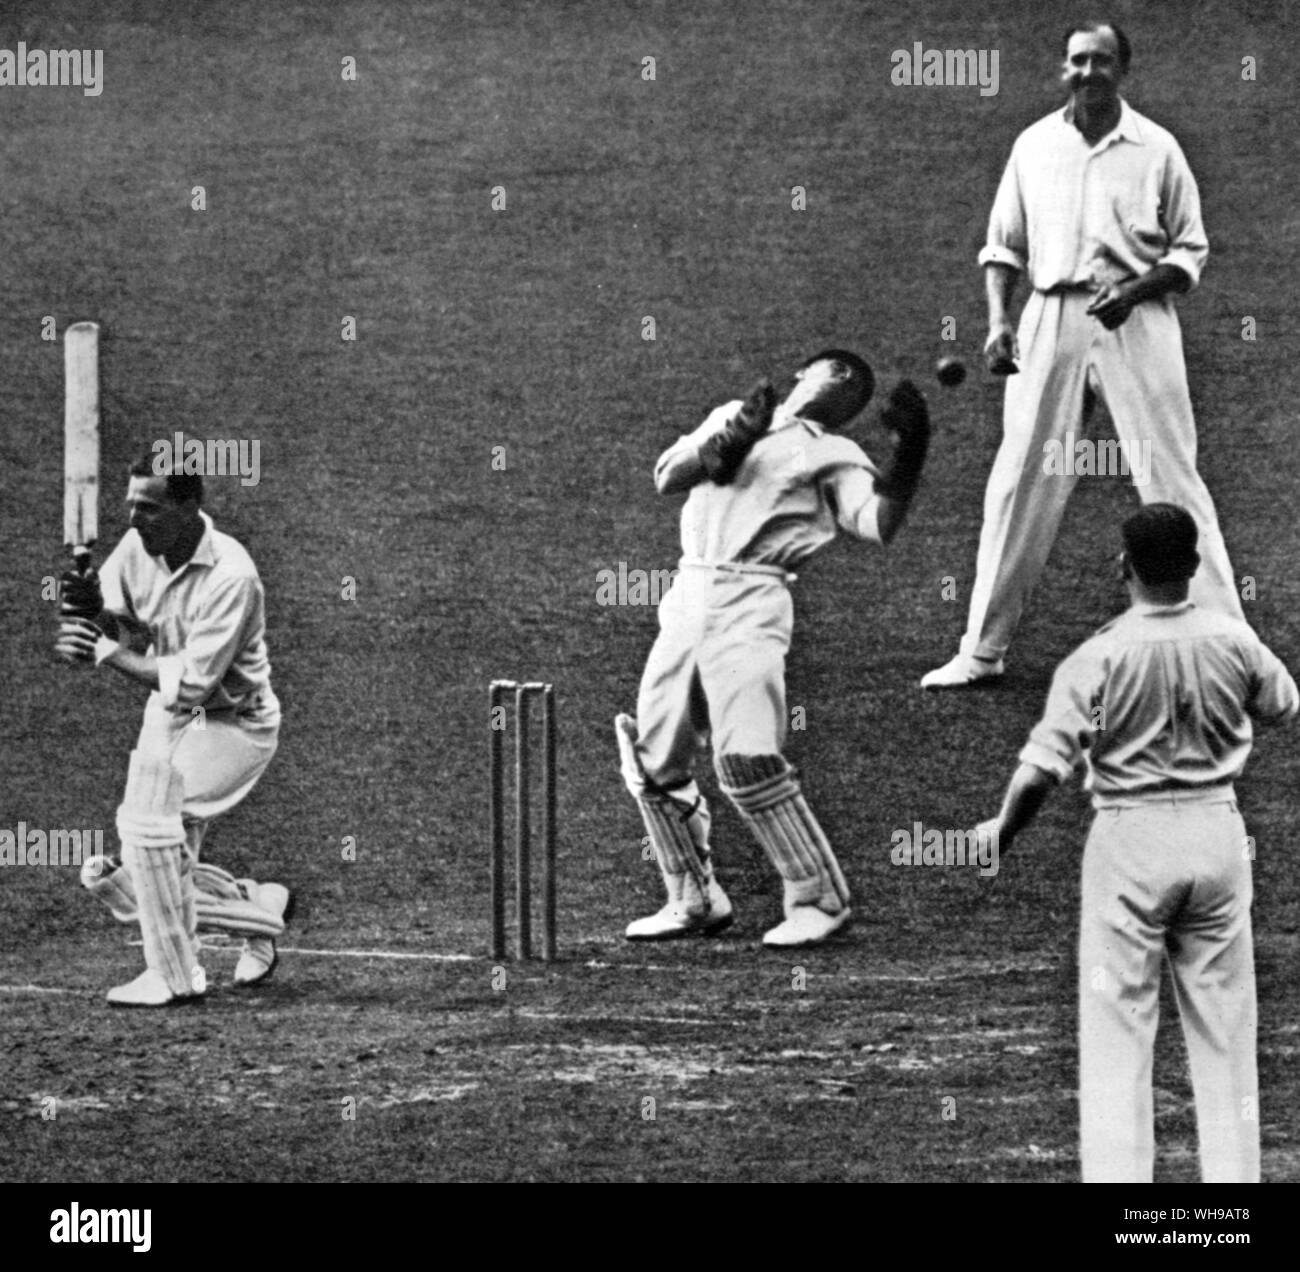 George Gunn von H Strudwick die Surrey wicketwächter am Oval 1927 P G H Kotflügel ist Schlupf fielding verpasst Stockfoto